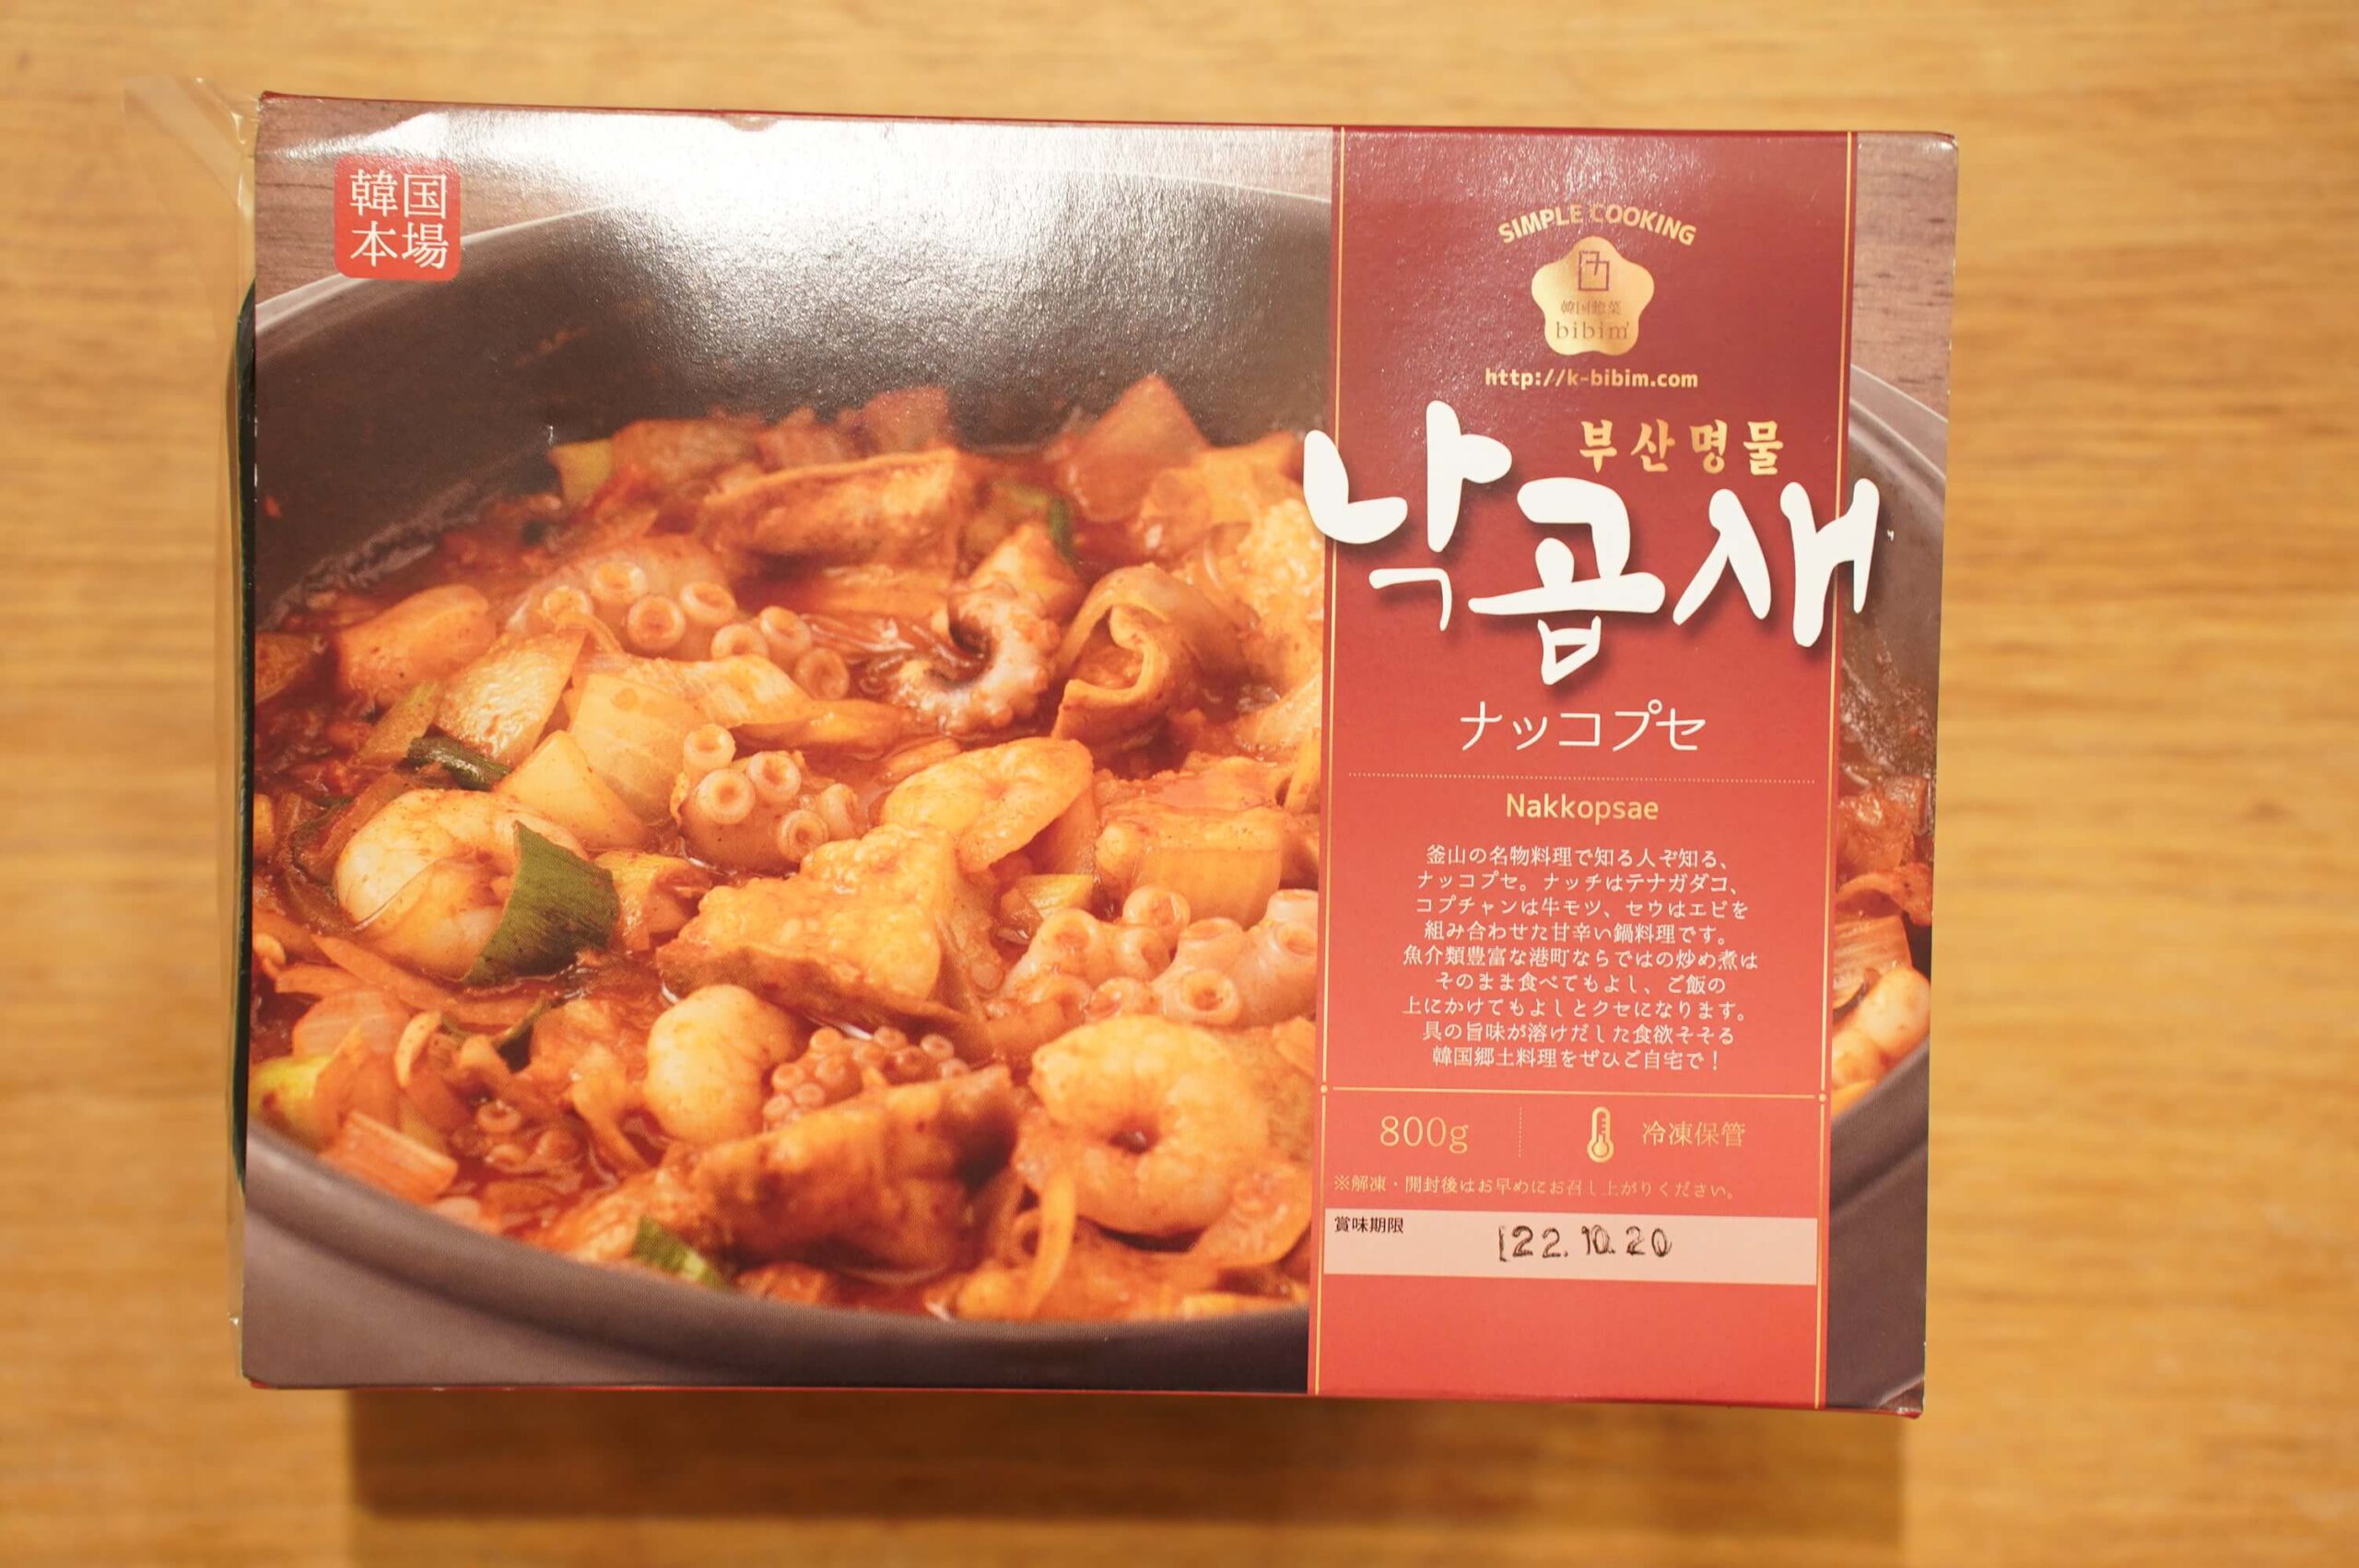 韓国・釜山の伝統料理「ナッコプセ」のパッケージ写真